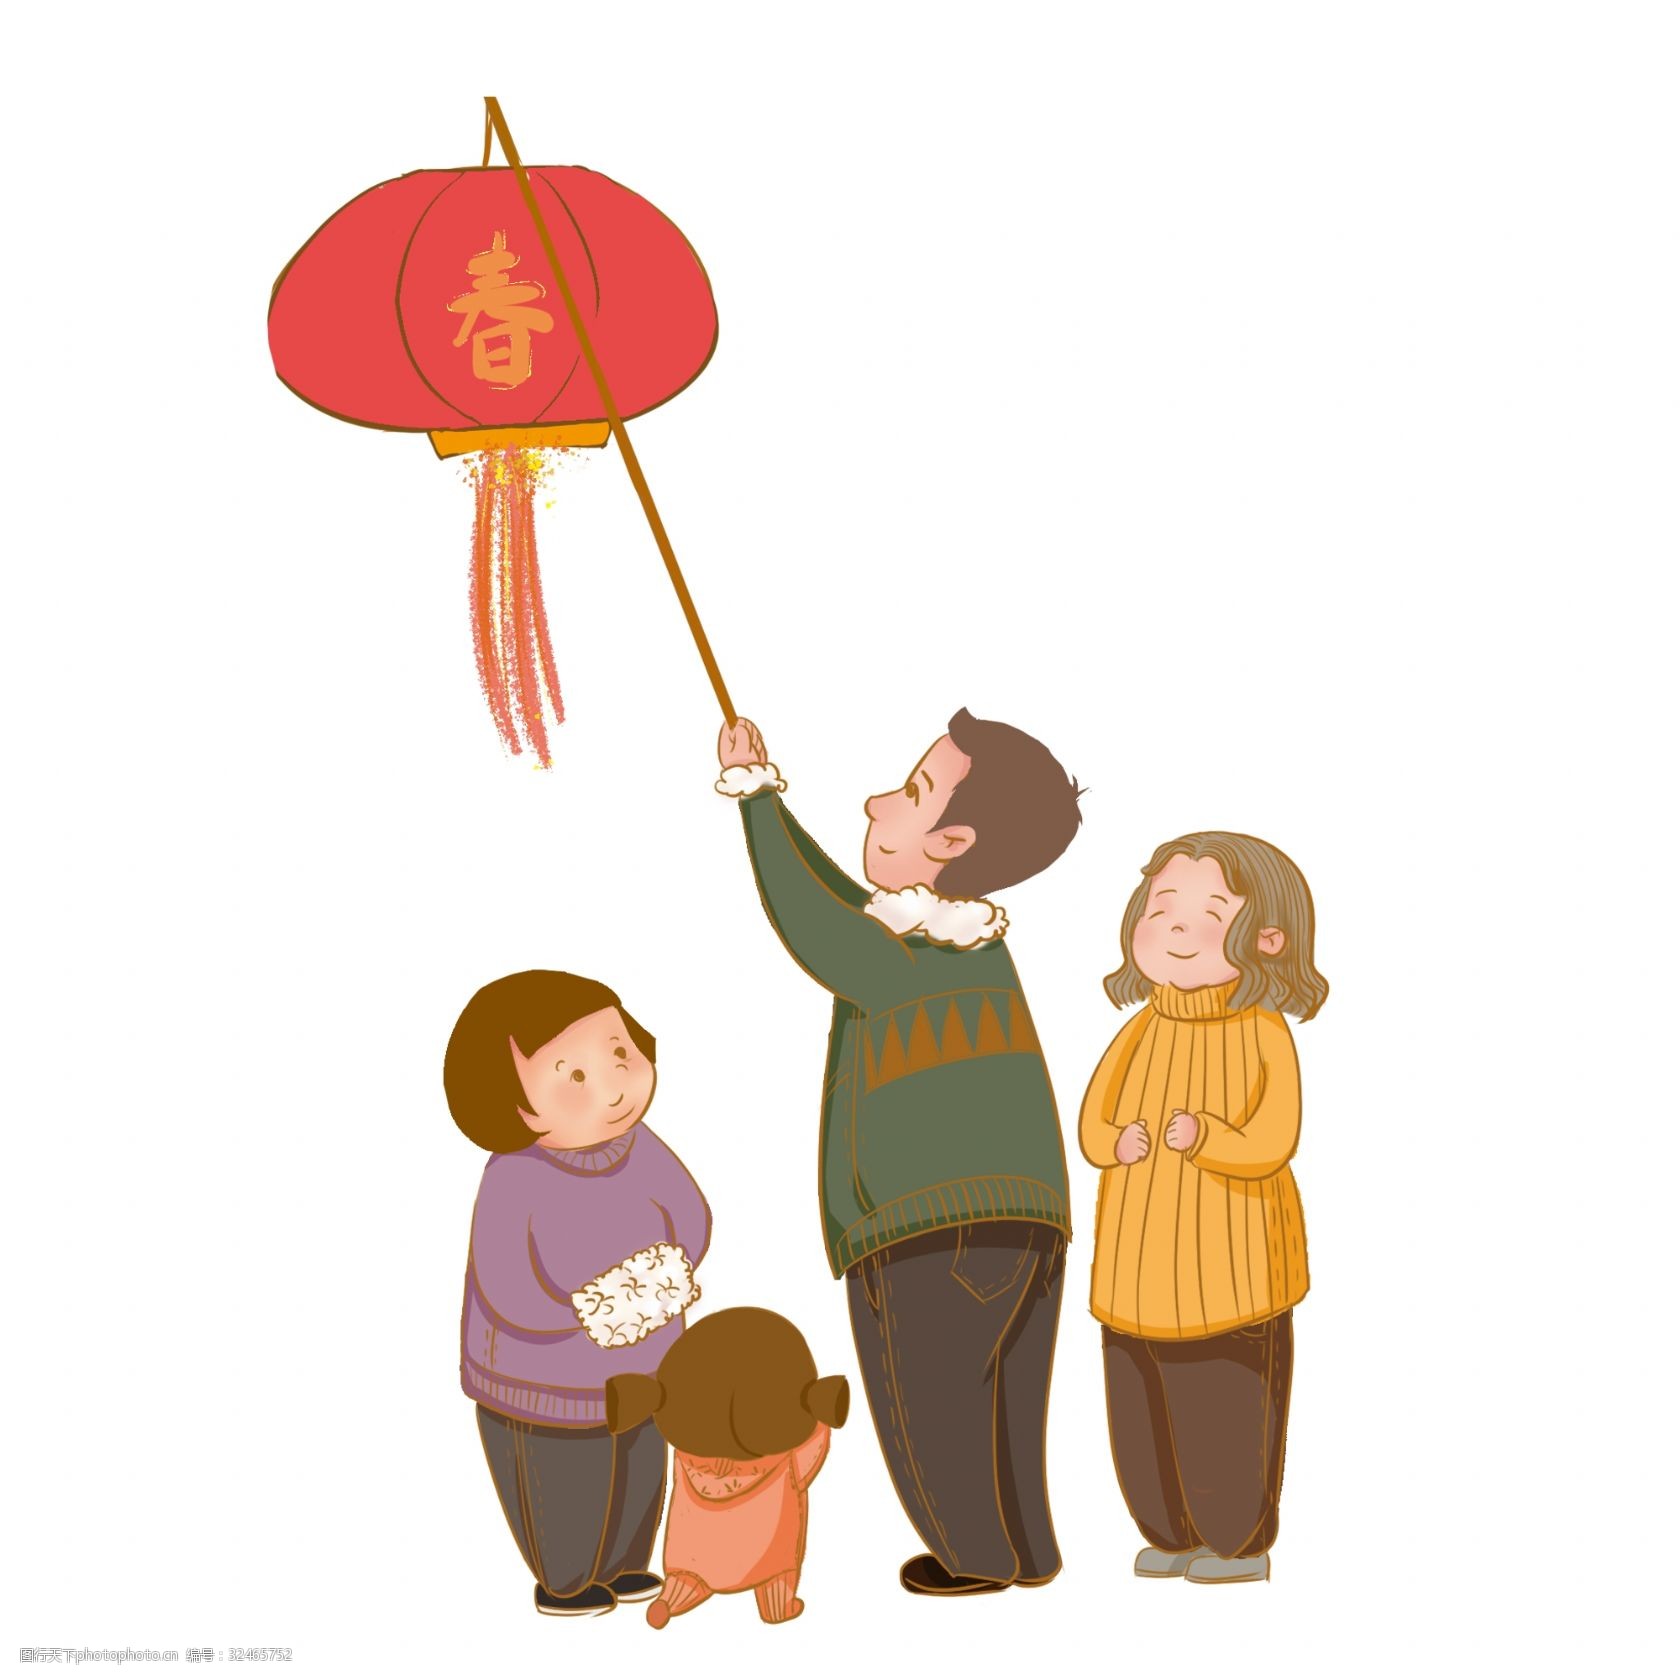 挂红灯笼 一家人 男女老少 传统节日 喜气 春节 喜气洋洋 小孩 老人